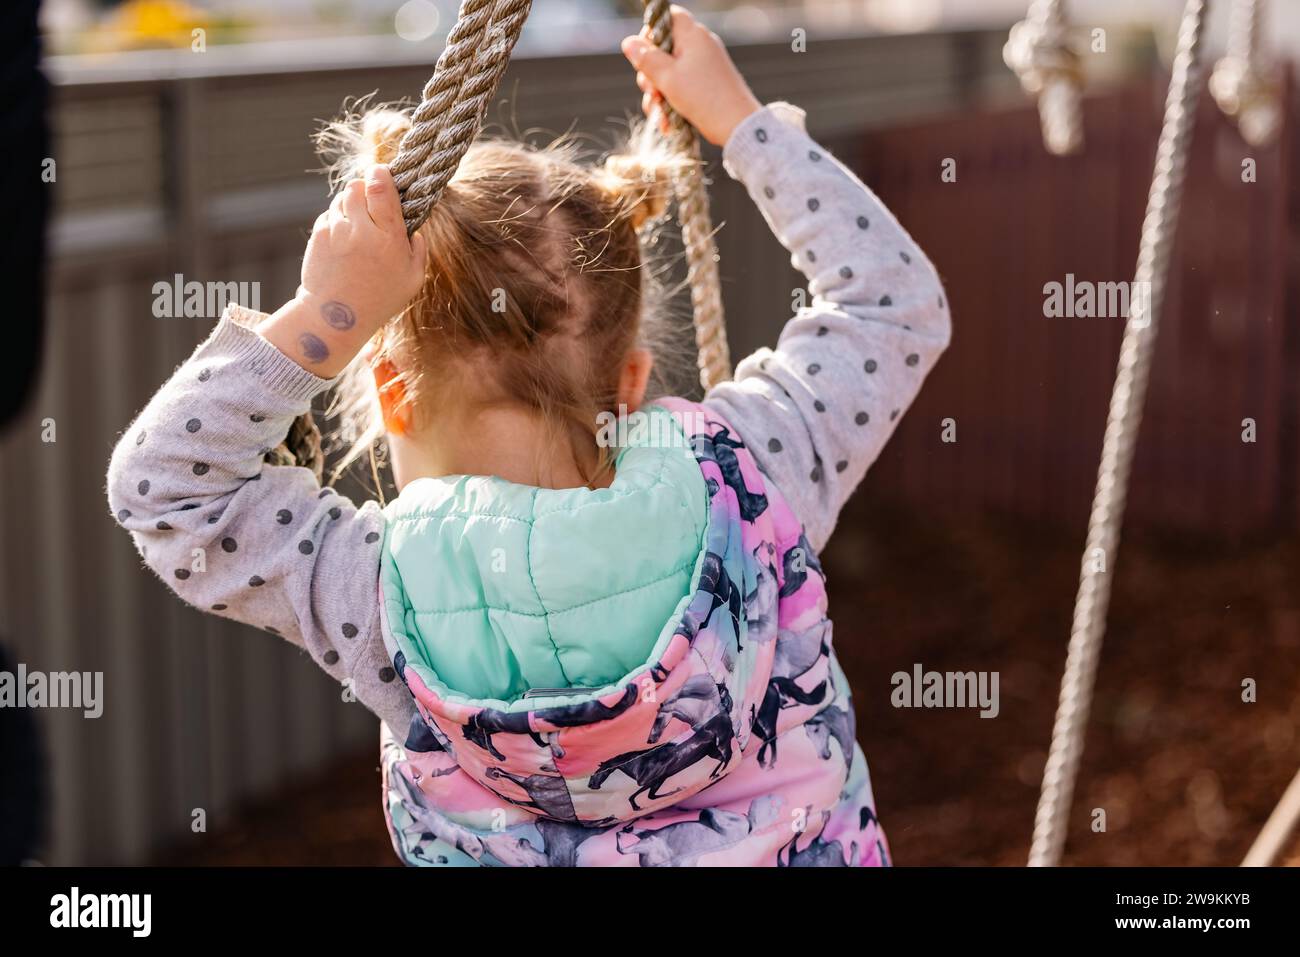 Petite fille jouant sur le matériel d'escalade de maternelle, pas de visage visible Banque D'Images